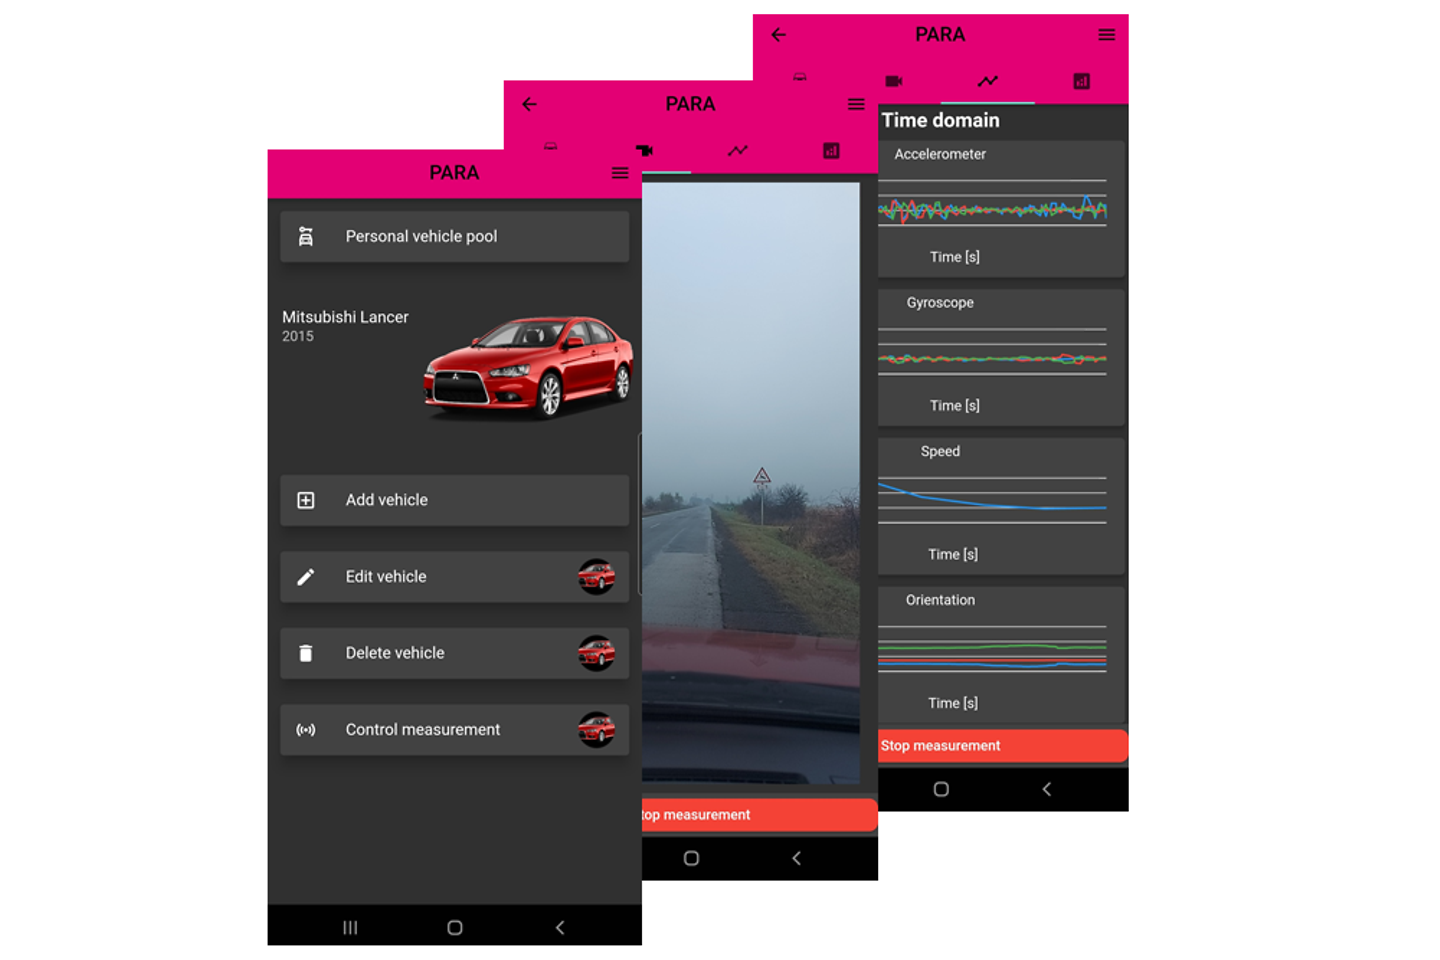 Screens of Para App